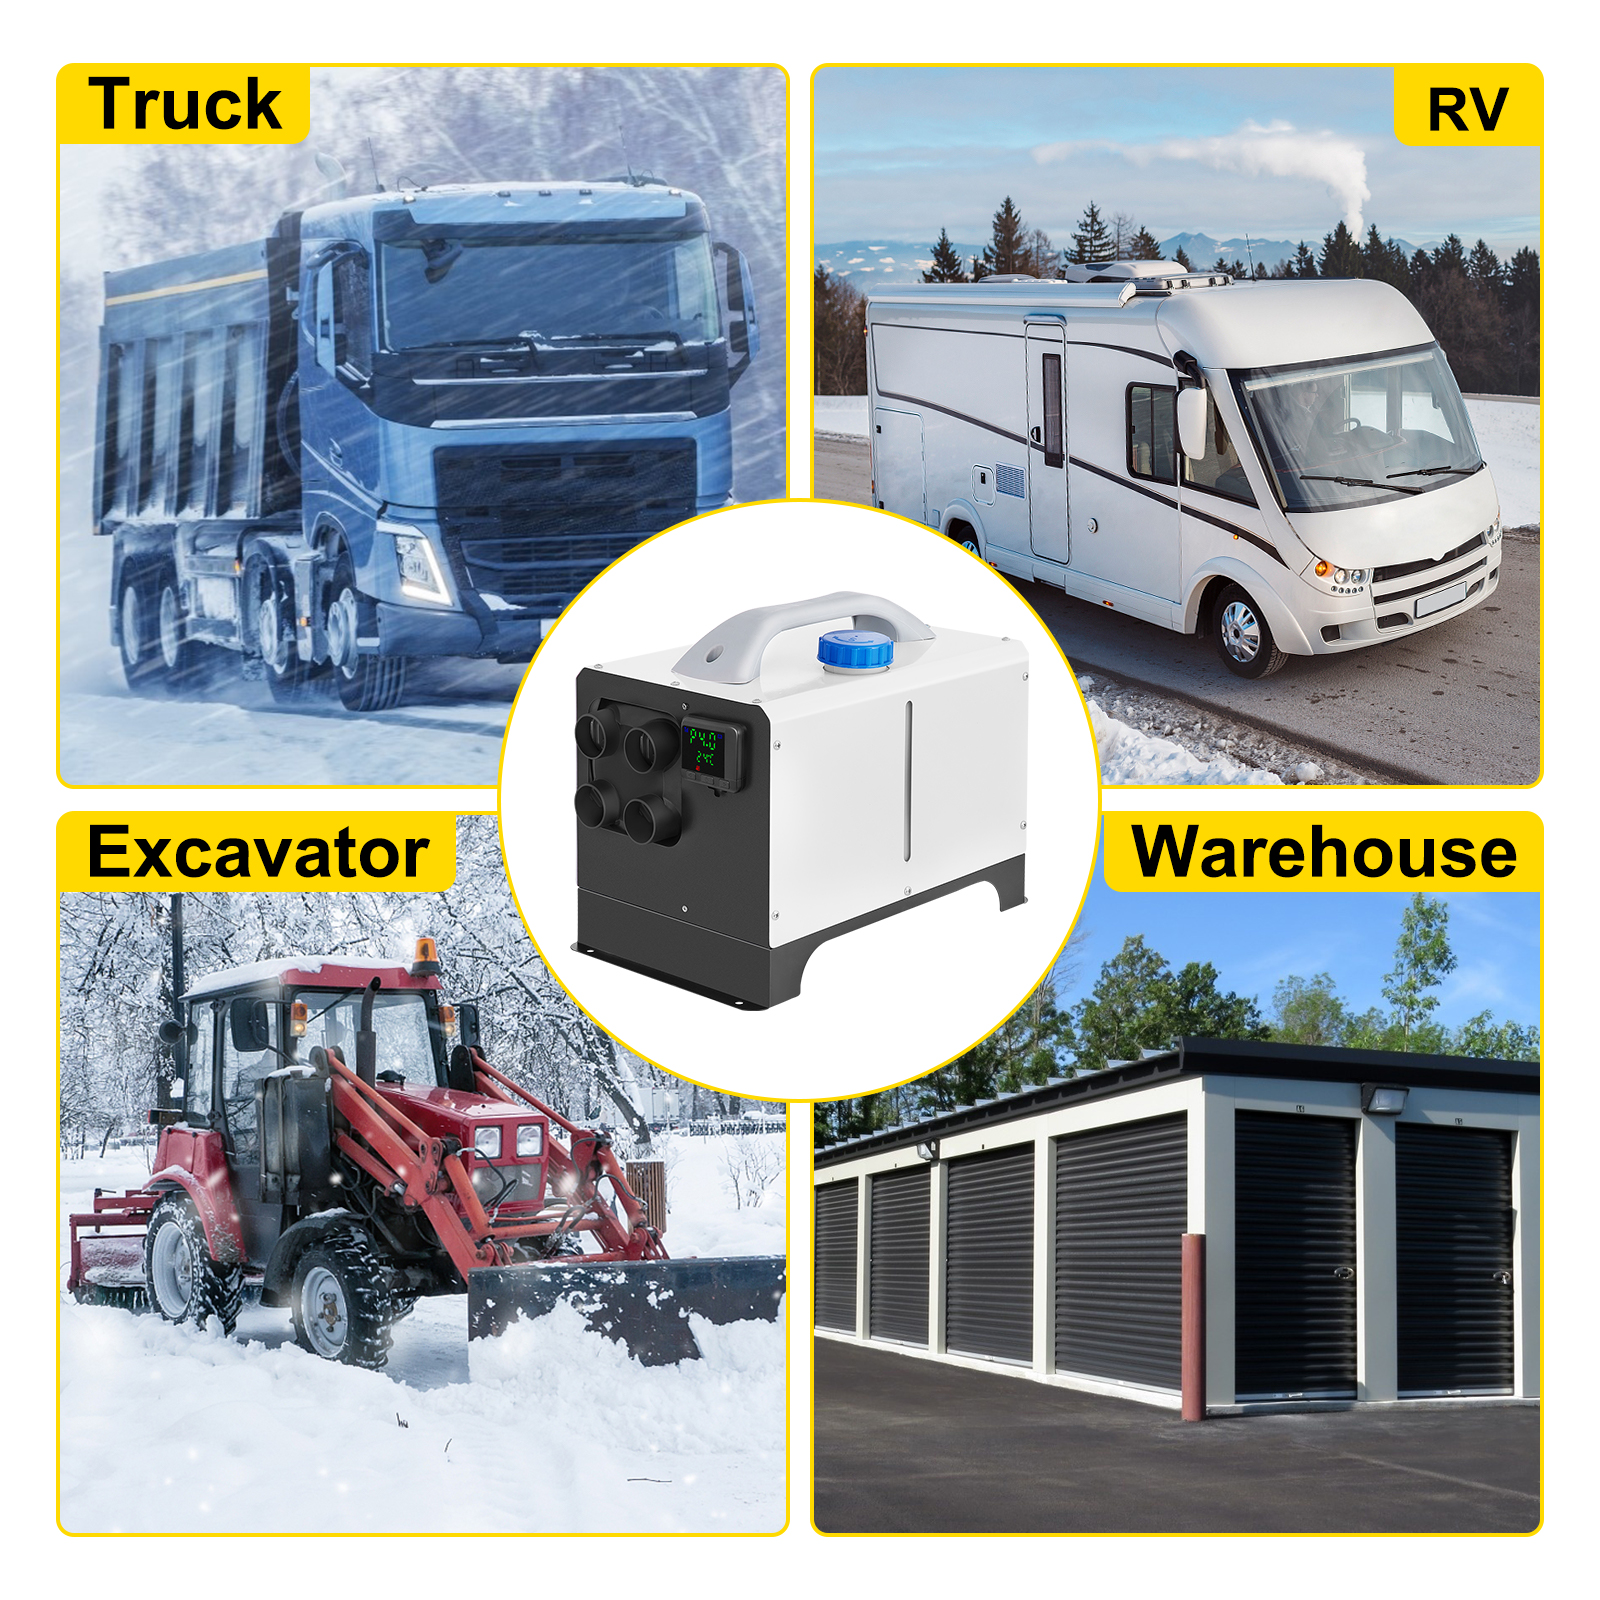 Calefacción estacionaria diésel 8 kW 12 V 24 V 220 V Coches, Autocaravanas,  Camiones, Barcos 